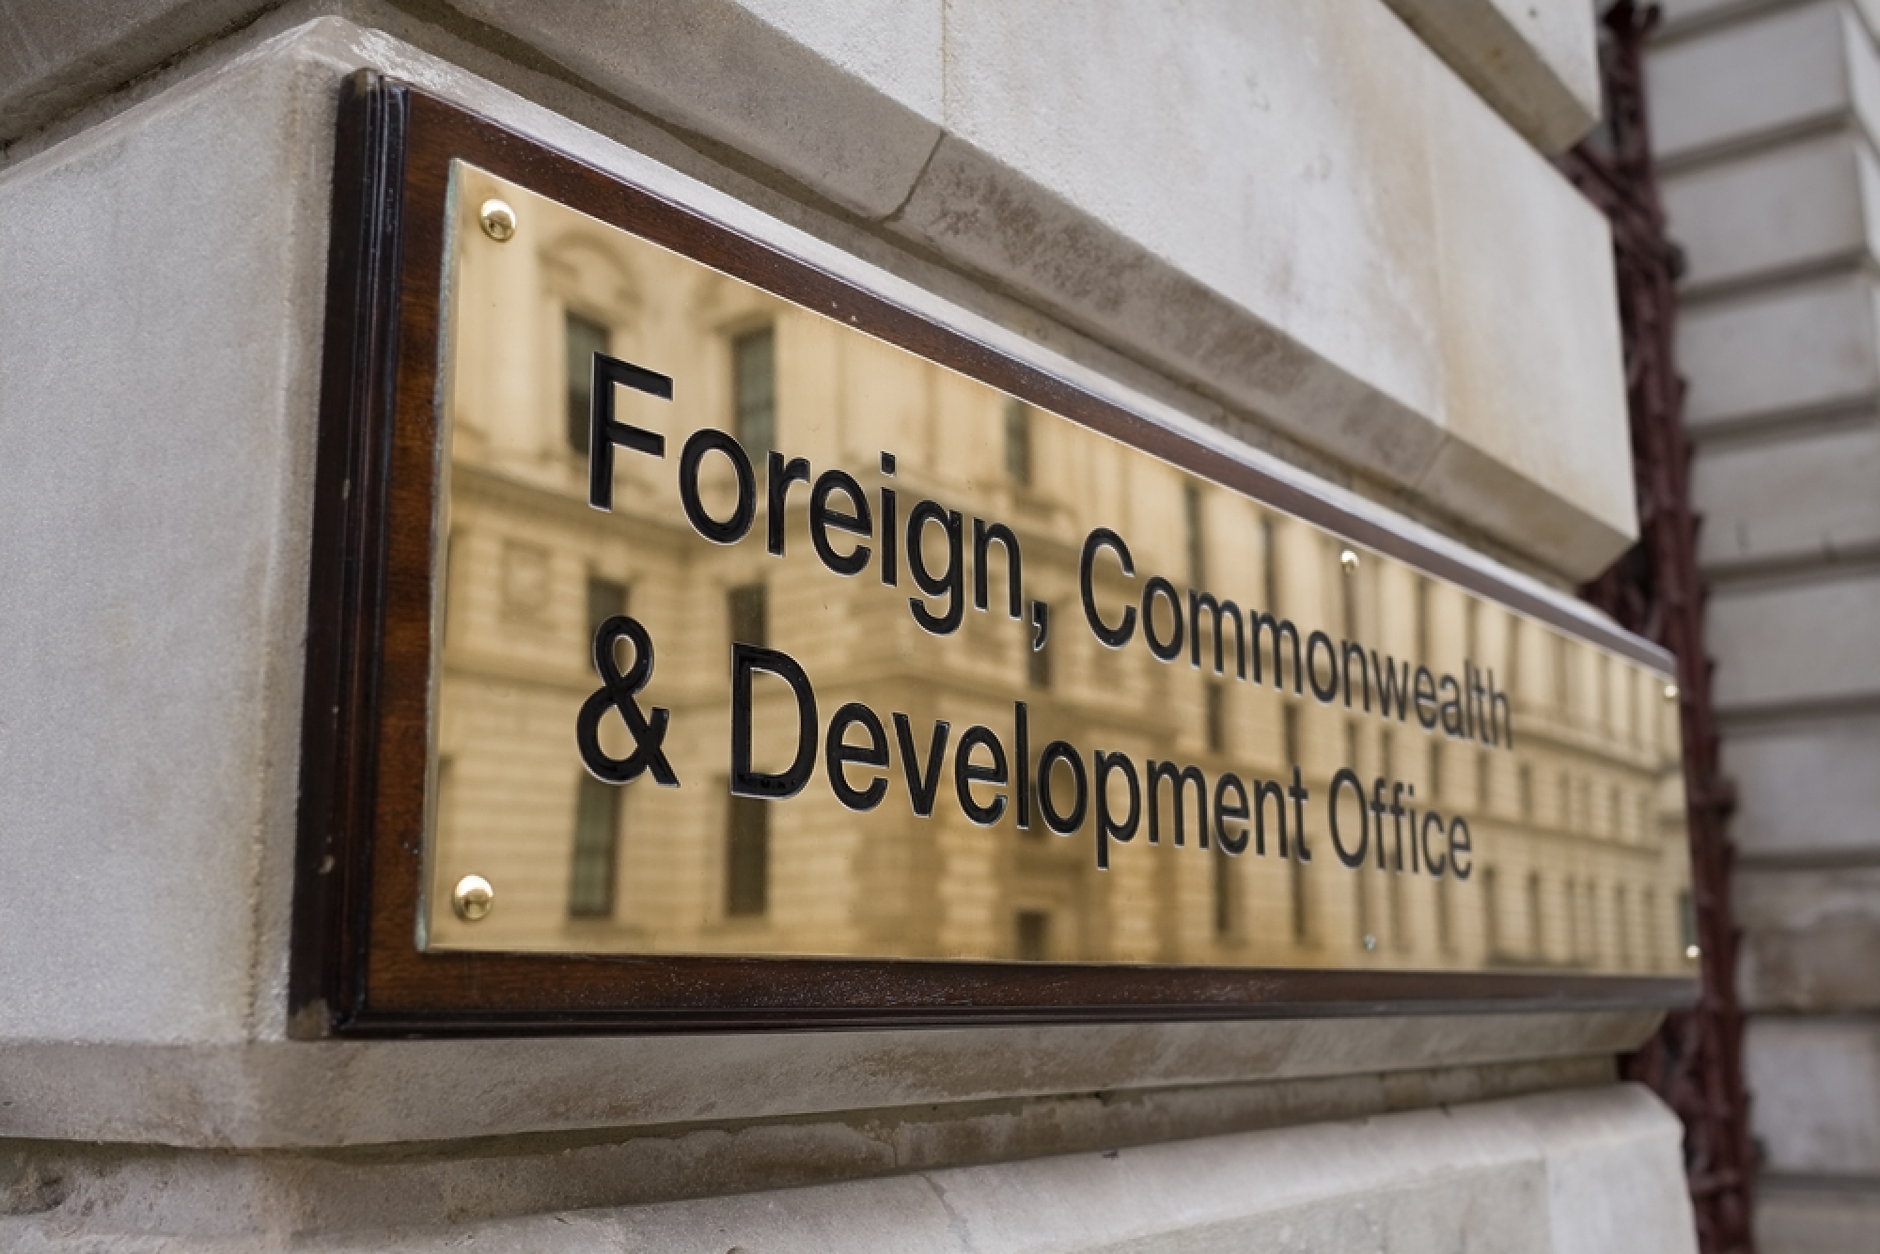 Британски дипломати призоваха за ново министерство на мястото на Foreign Office